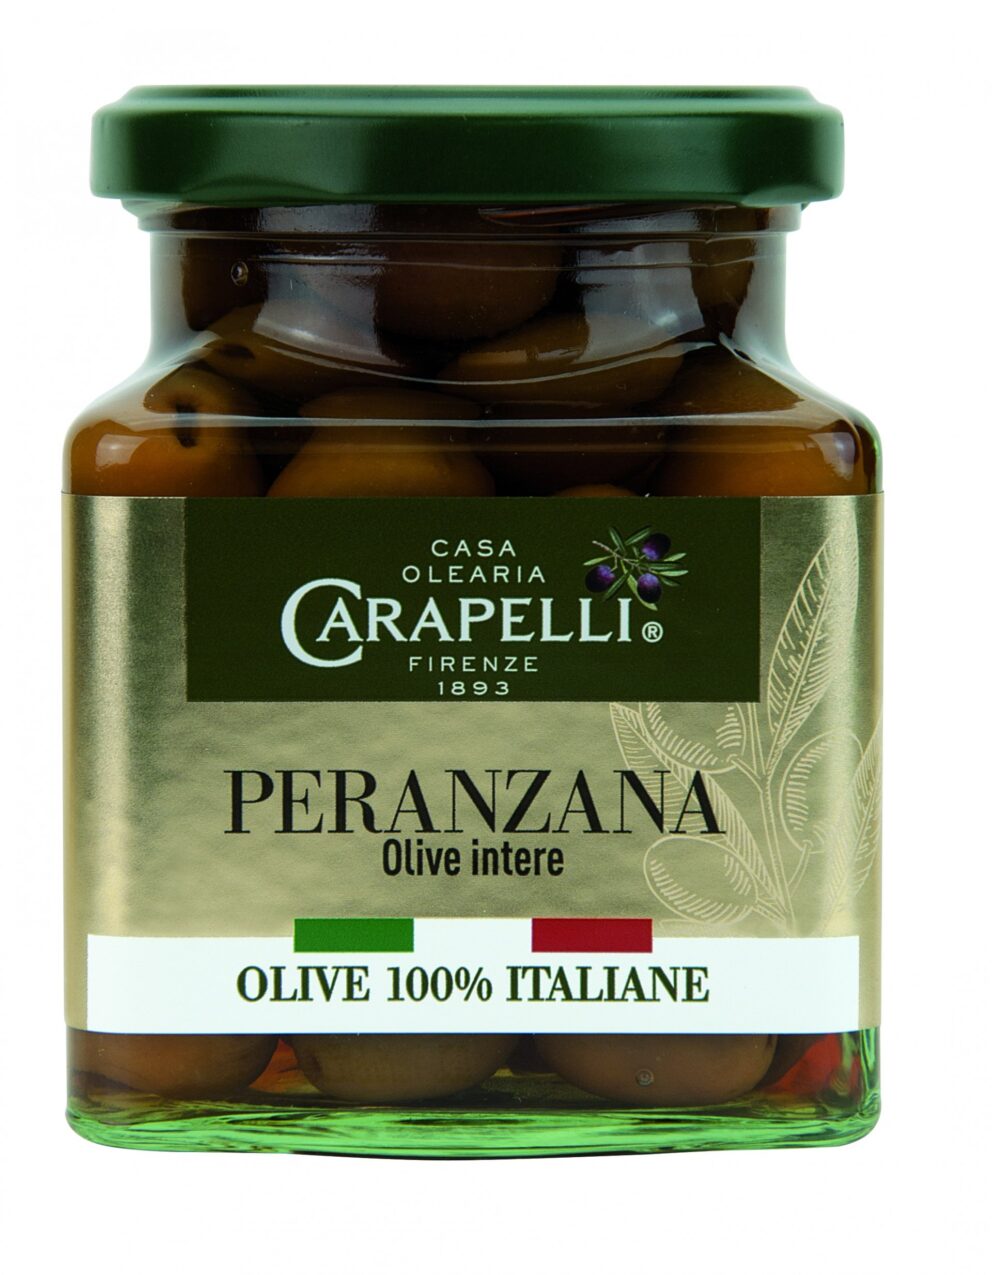 Le olive da tavola a marchio Carapelli